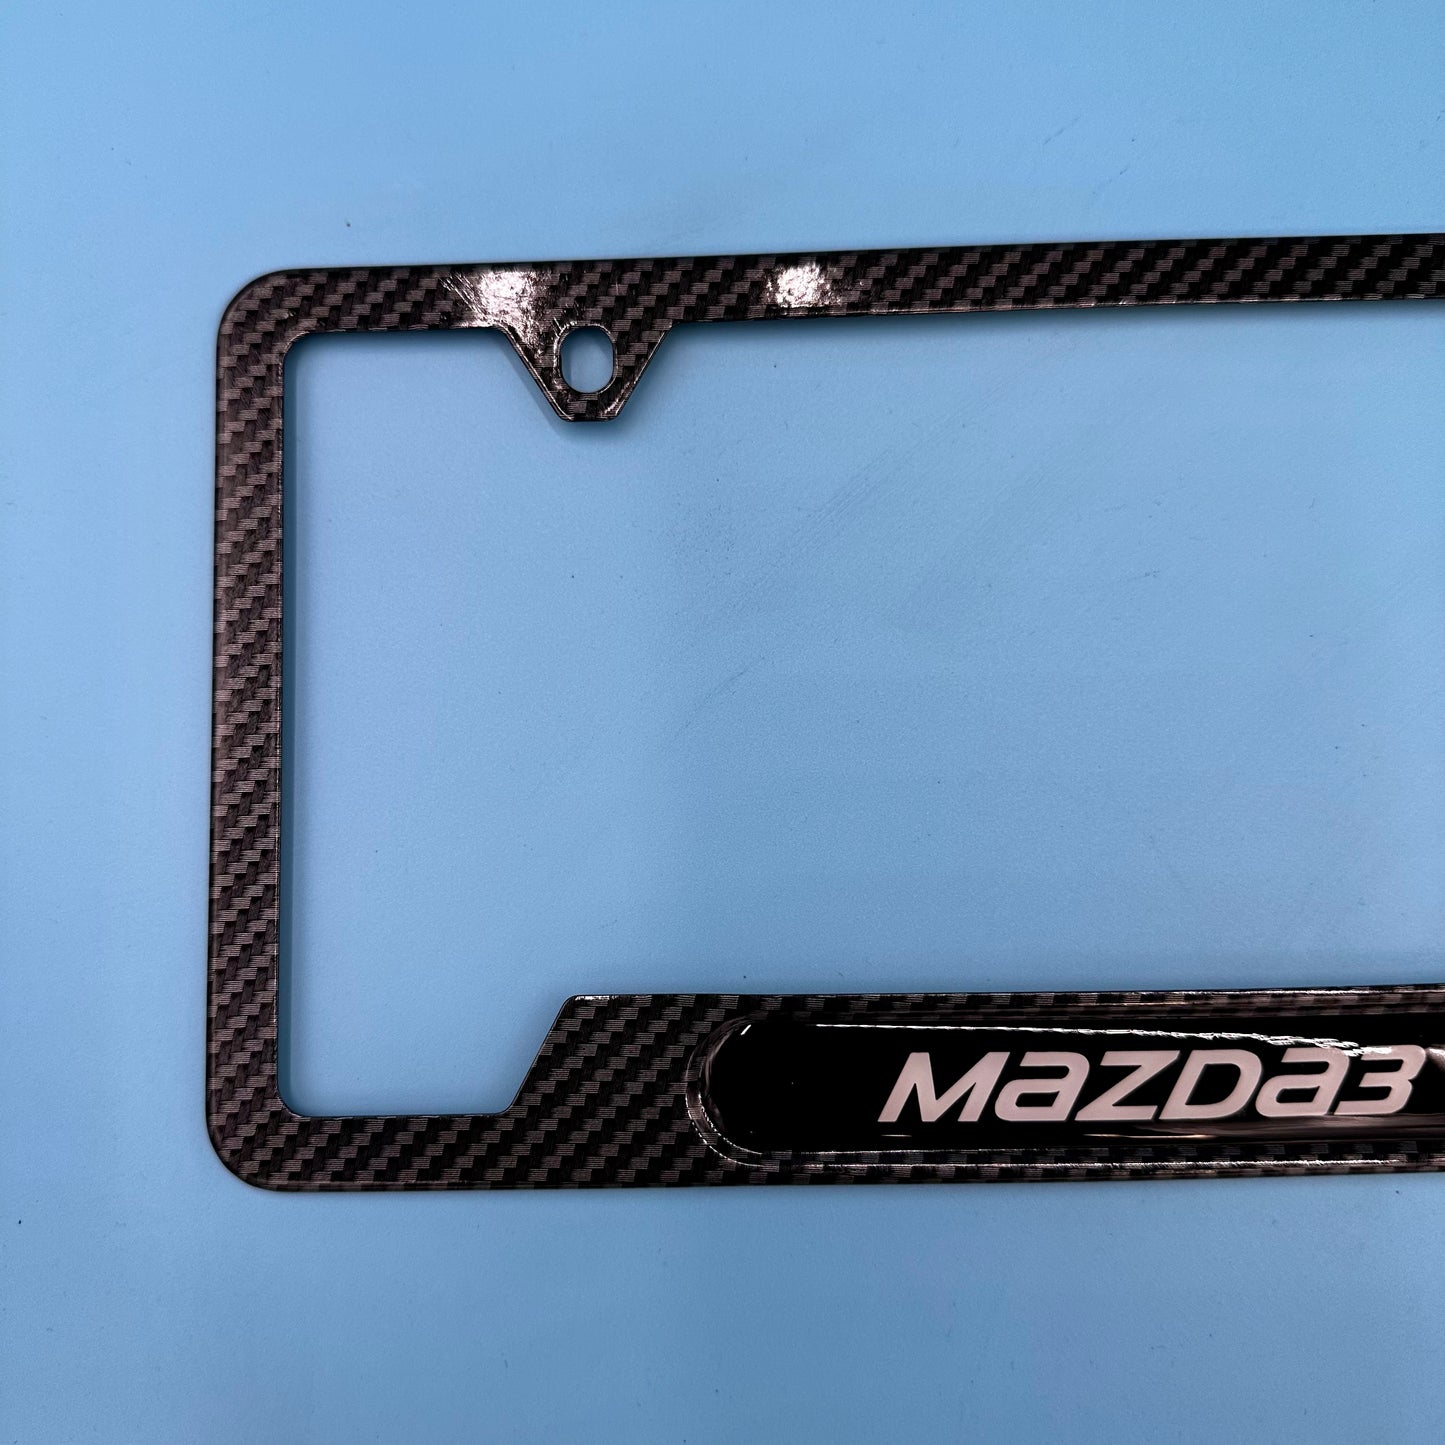 Mazda3 License Plate Frame